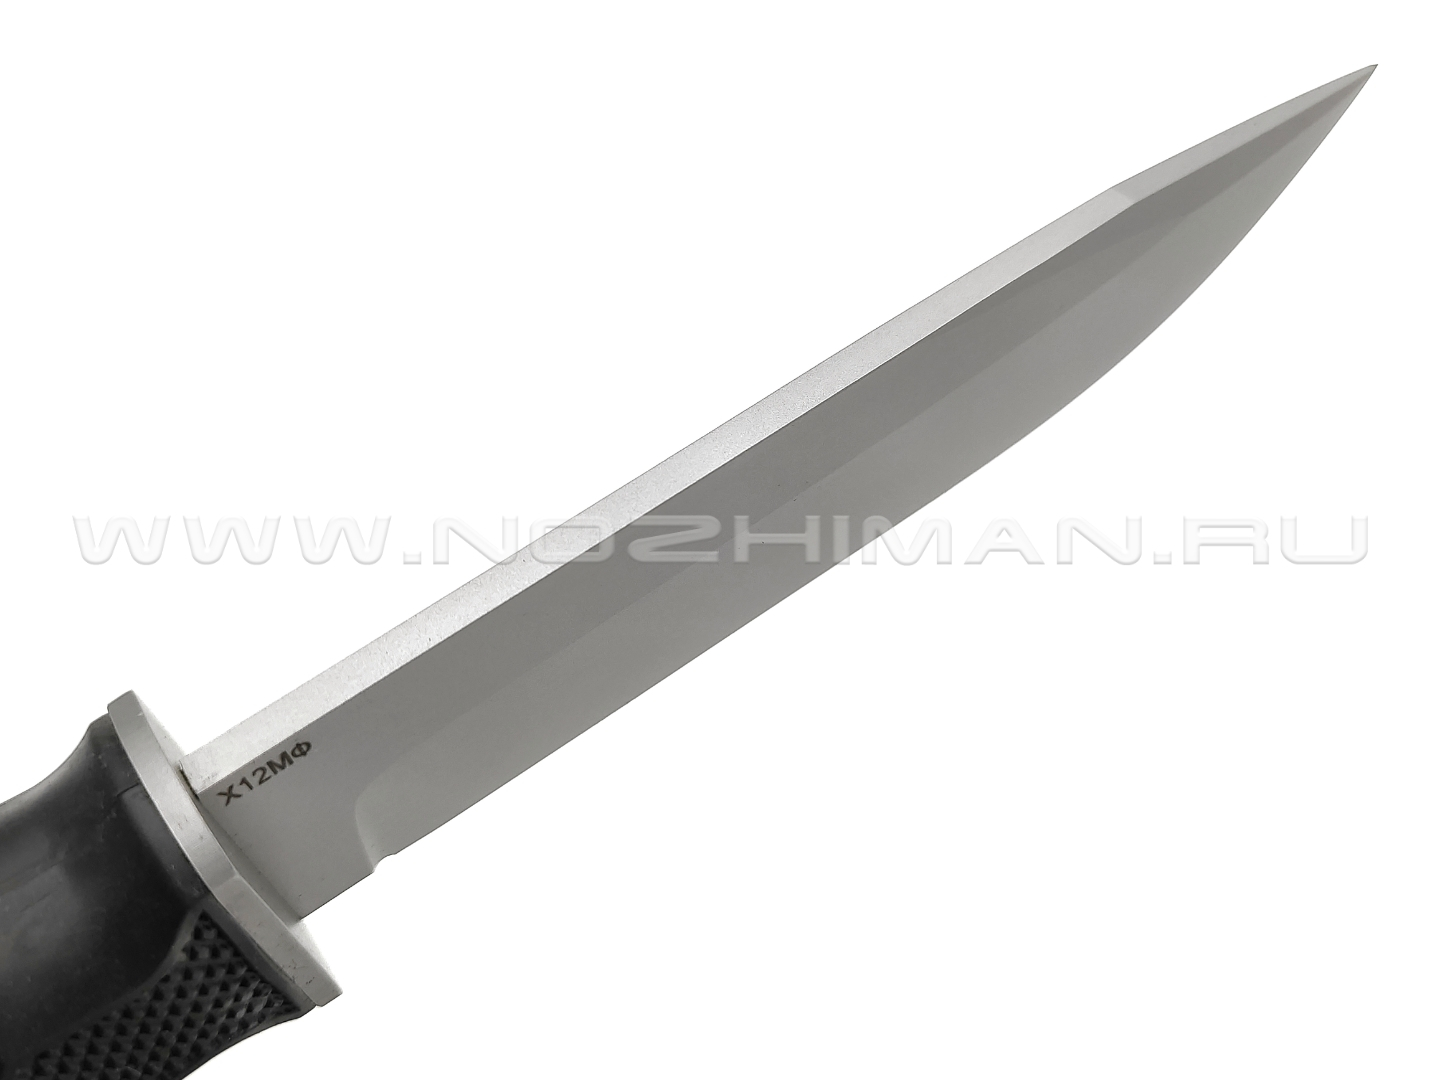 Saro нож Финский сталь Х12МФ bead-blast, рукоять резина